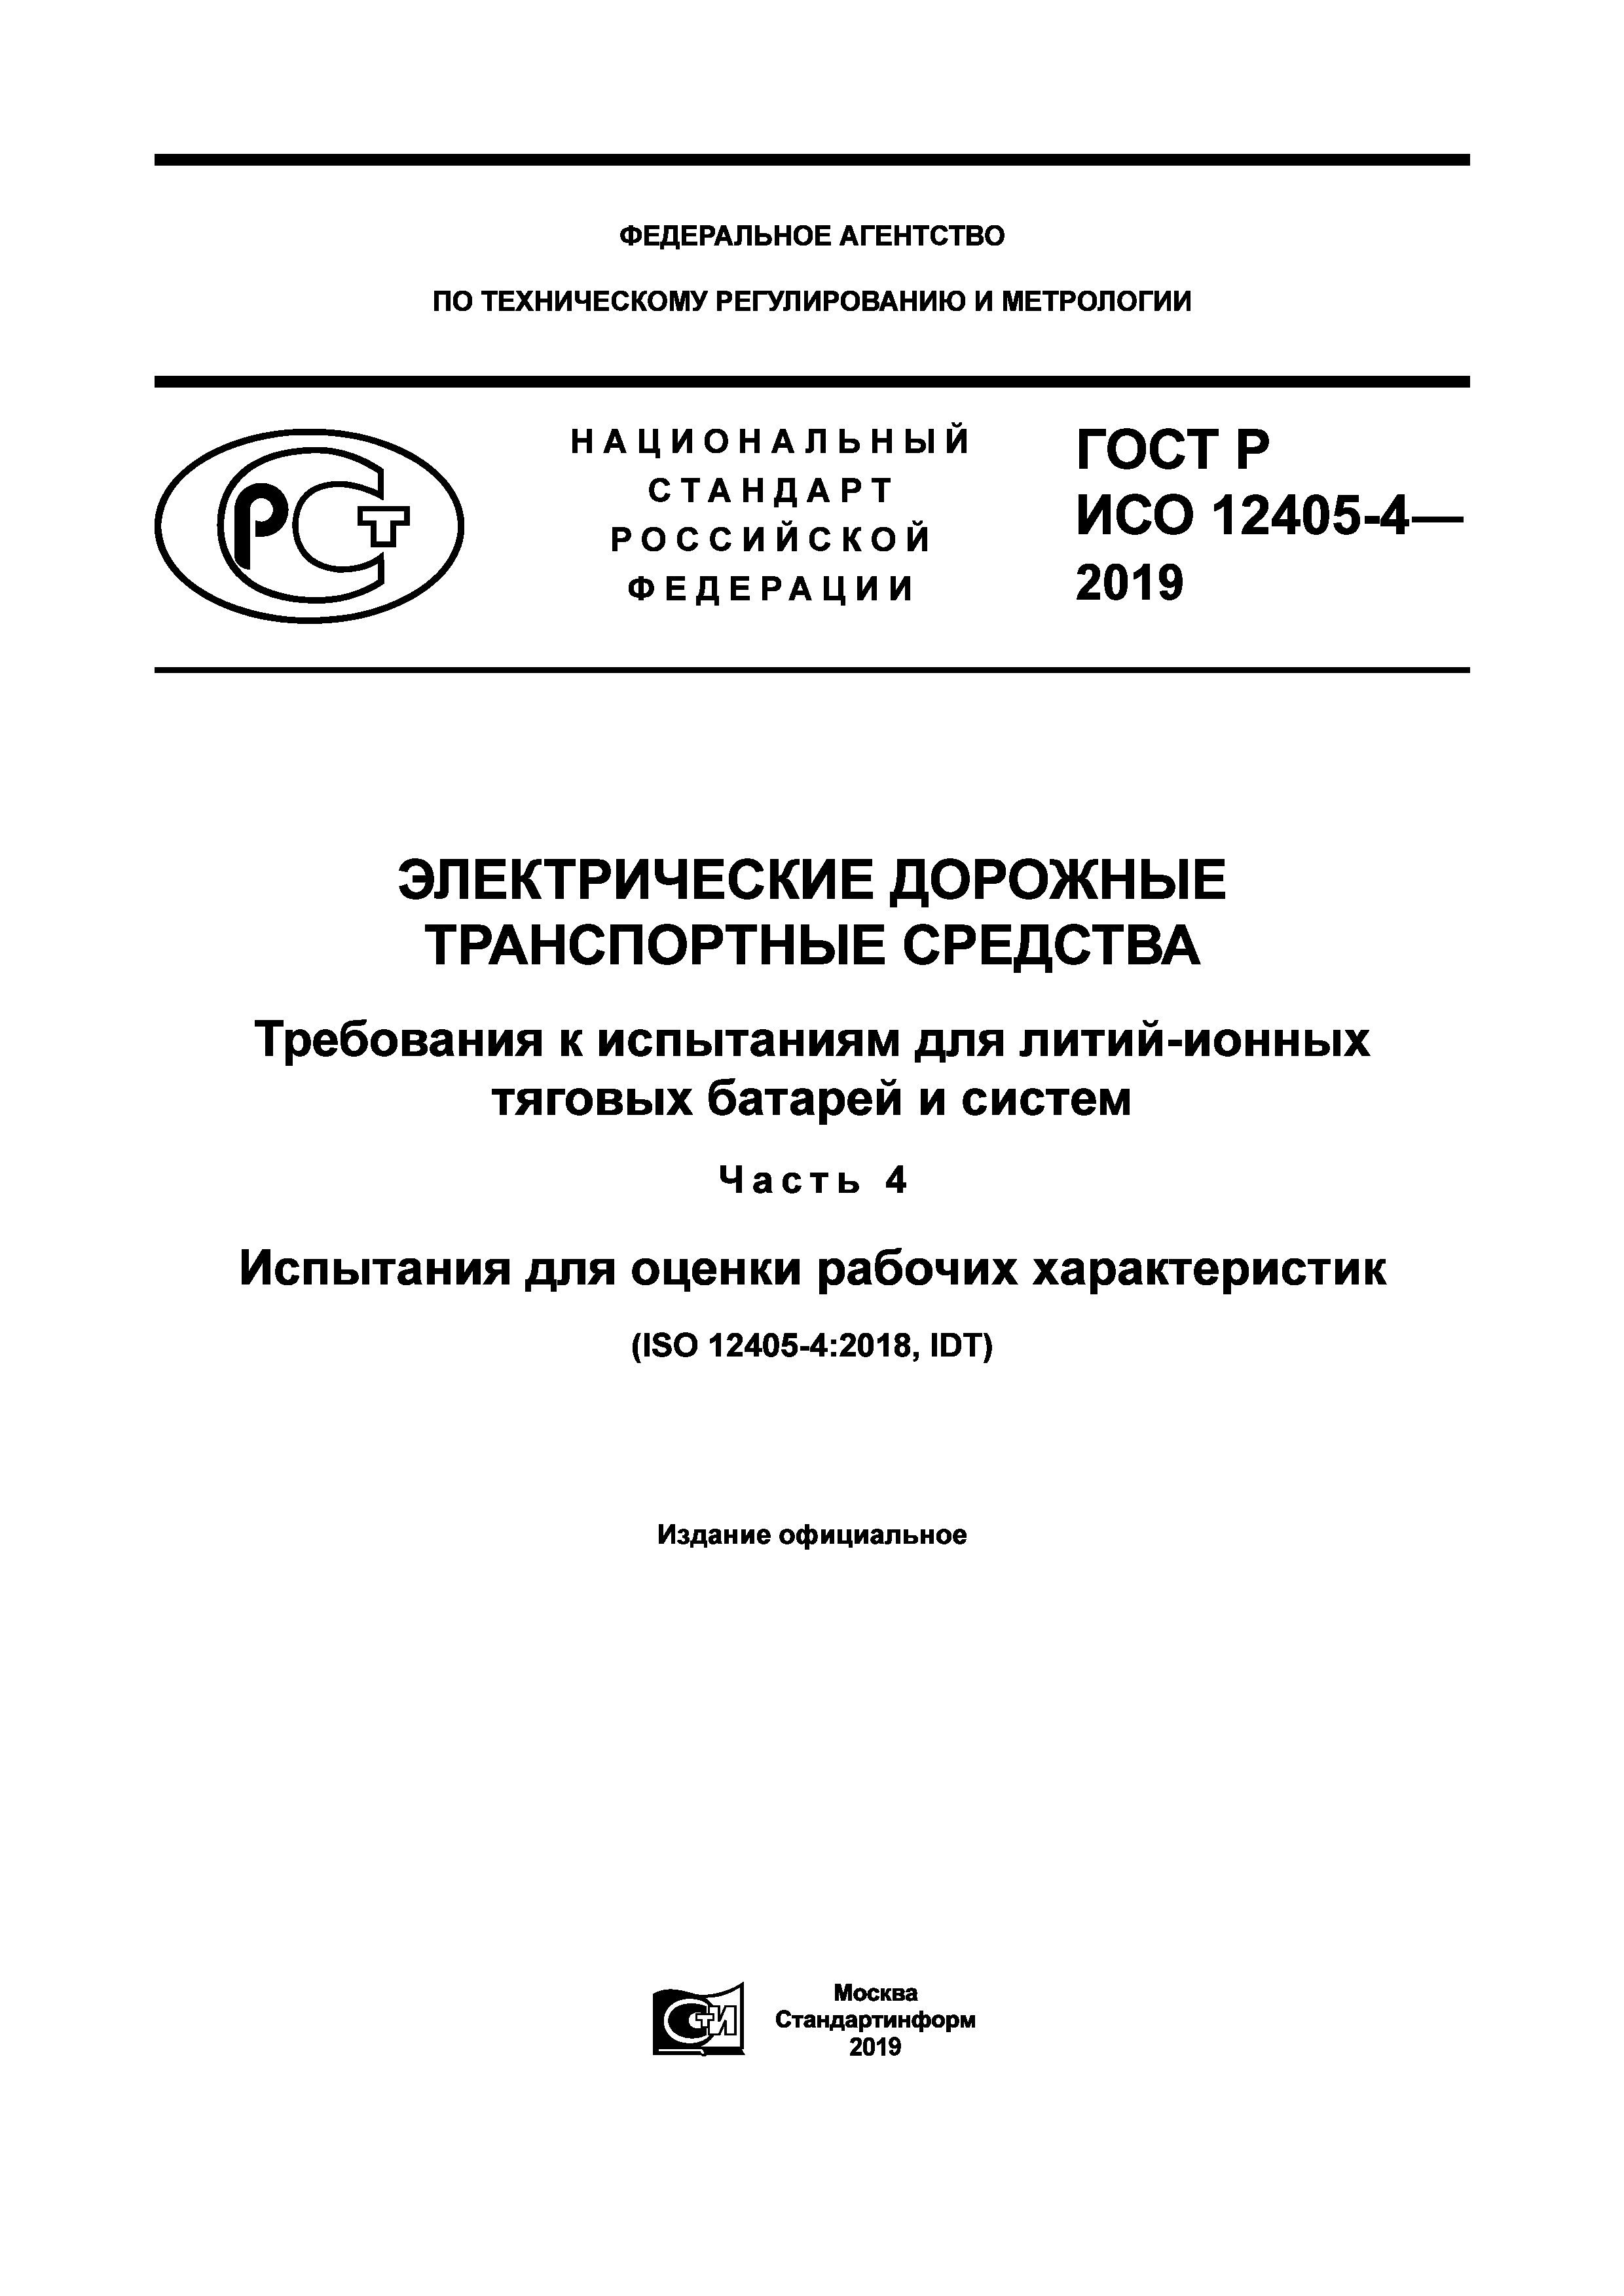 ГОСТ Р ИСО 12405-4-2019